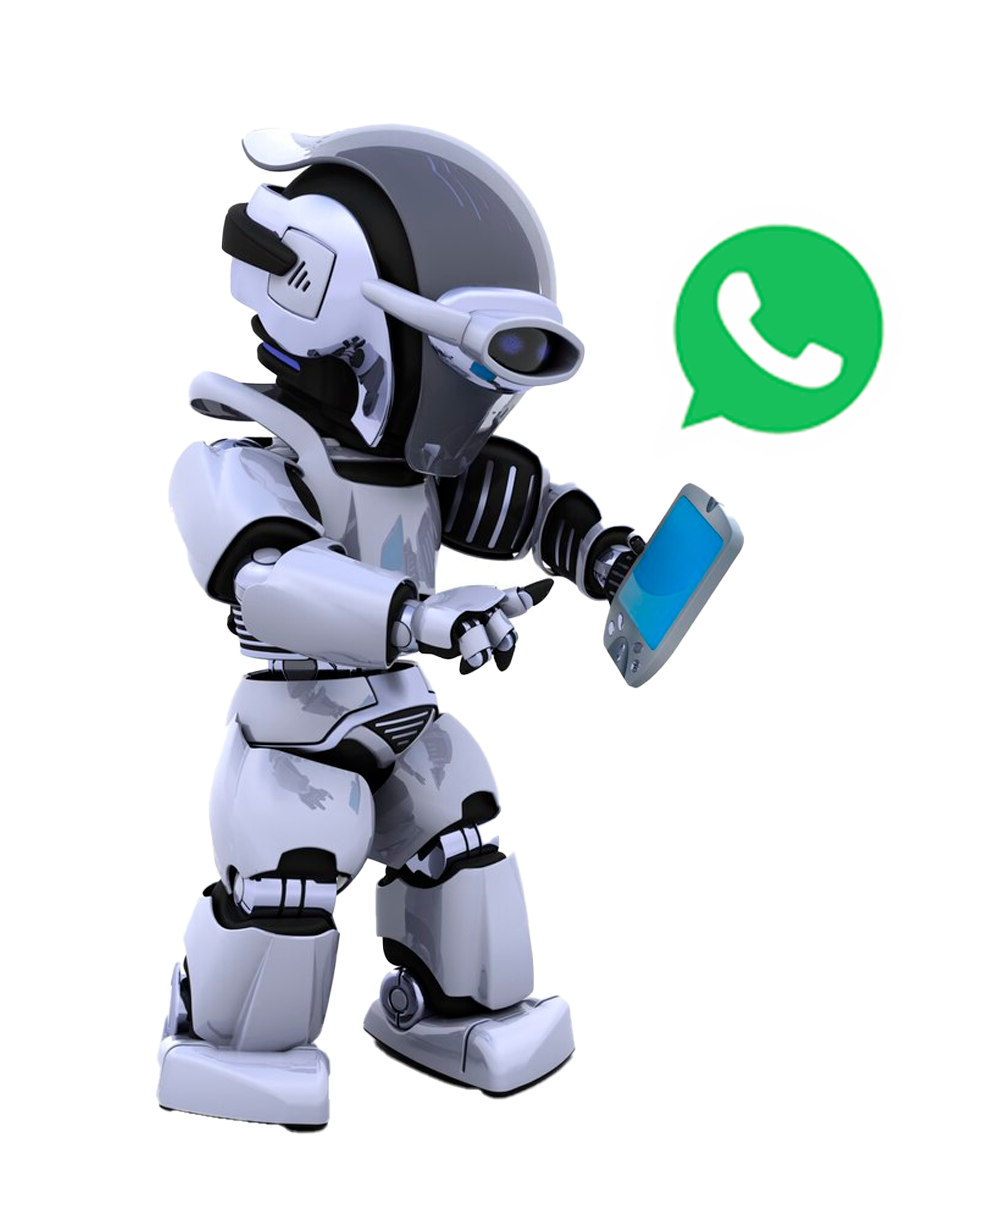 Autómatas, automatiza números de WhatsApp en Ecuador con Masivos Latam